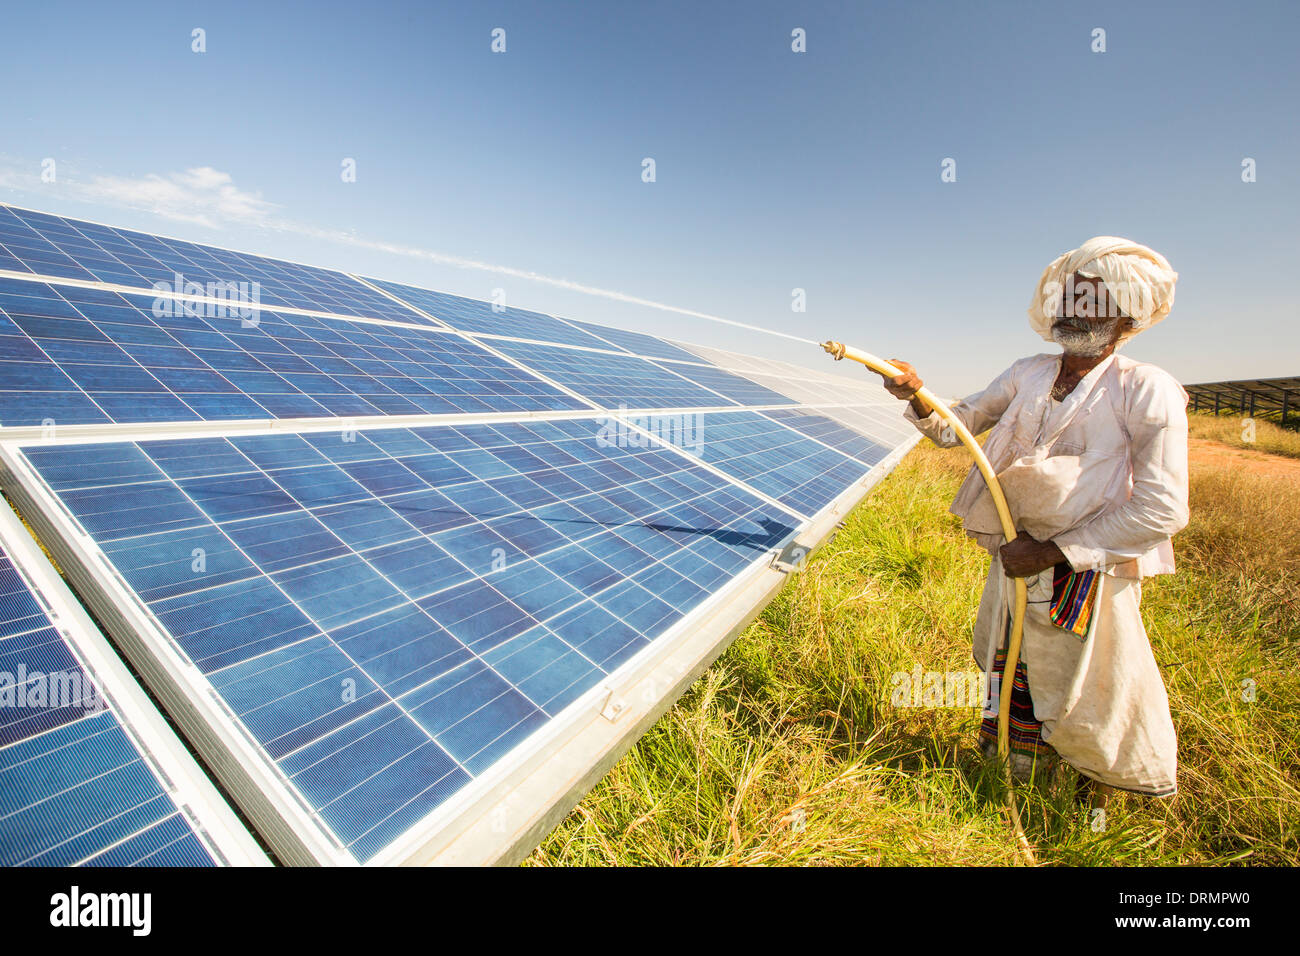 Asiens größte solar Popwer Bahnhof, der Gujarat-Solarpark in Gujarat, Indien. Es hat eine installierte Leistung von 1000 MW. Stockfoto